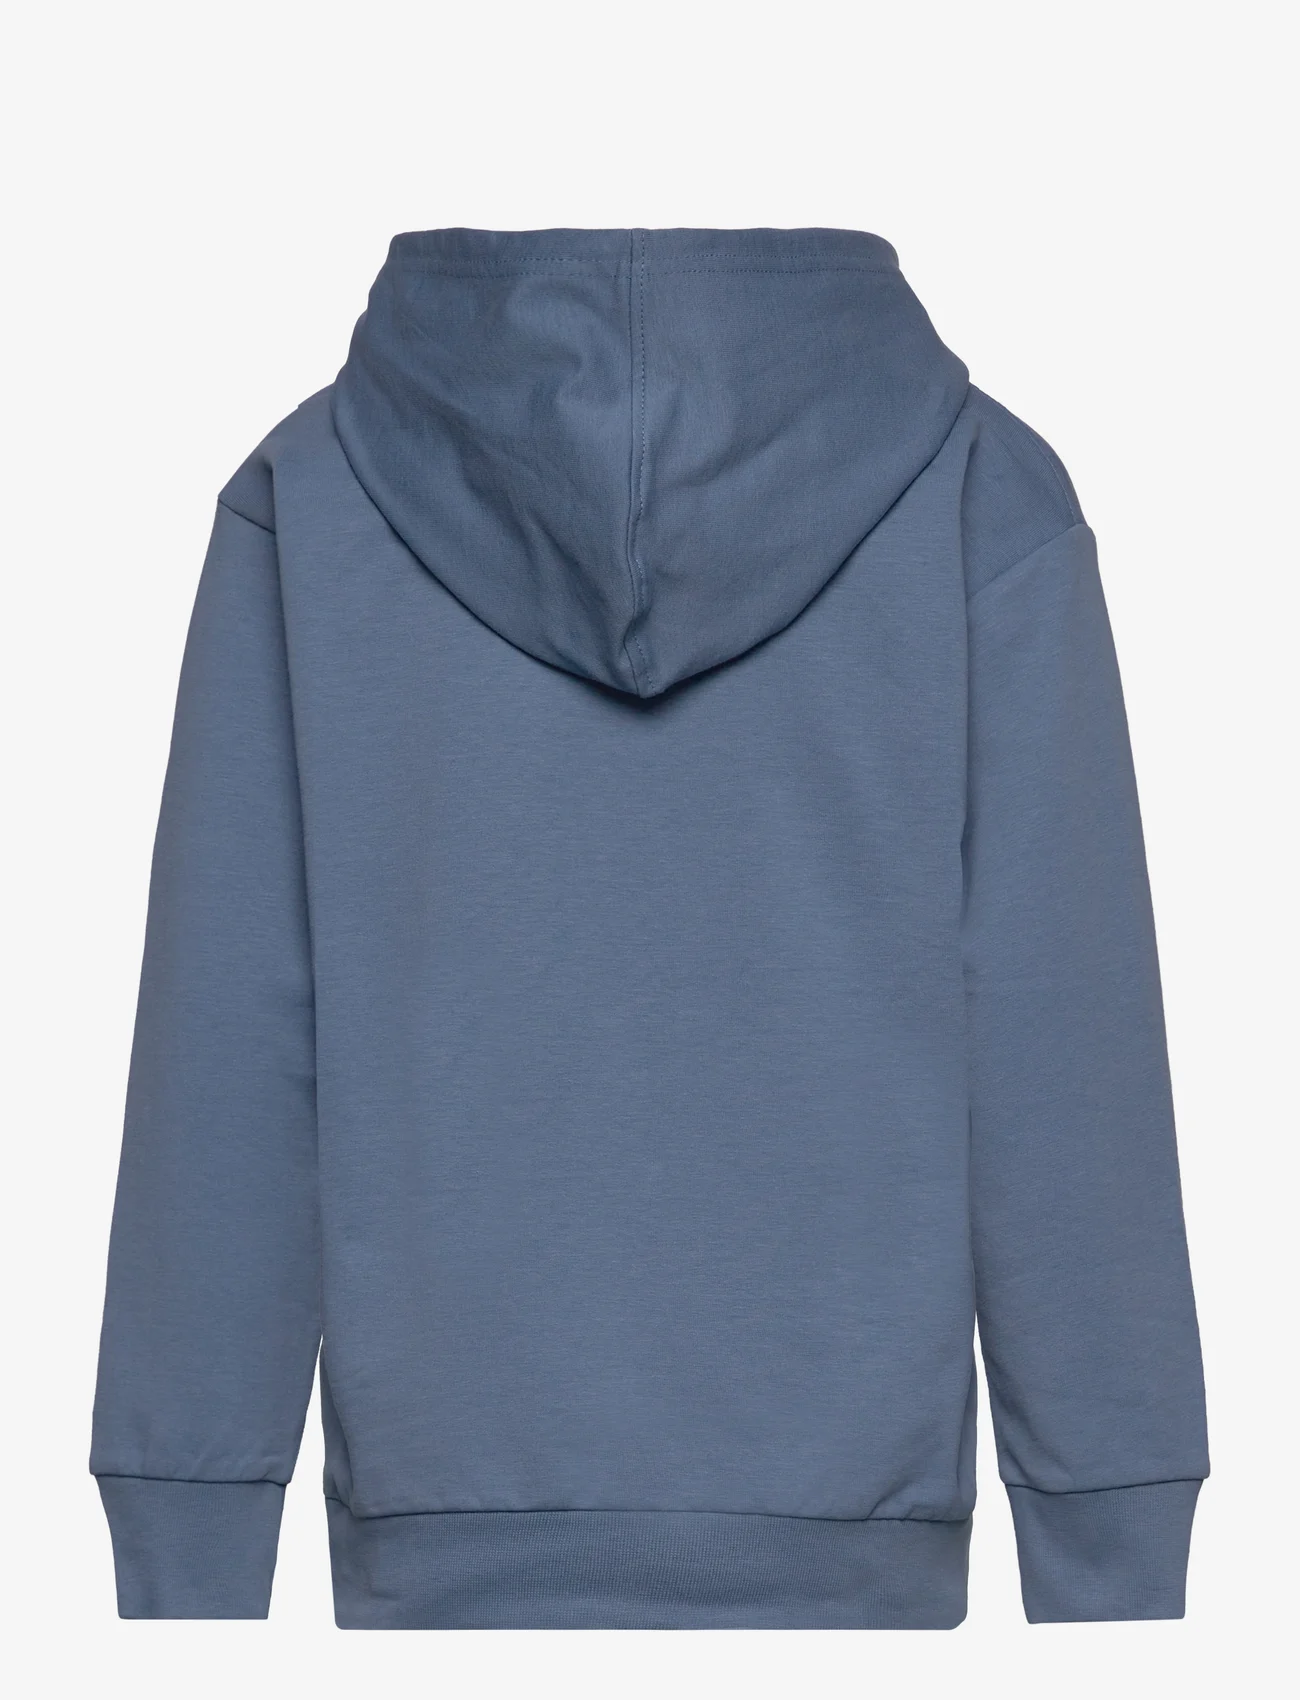 Hummel - hmlATLAS HOODIE - sweatshirts & hoodies - coronet blue - 1